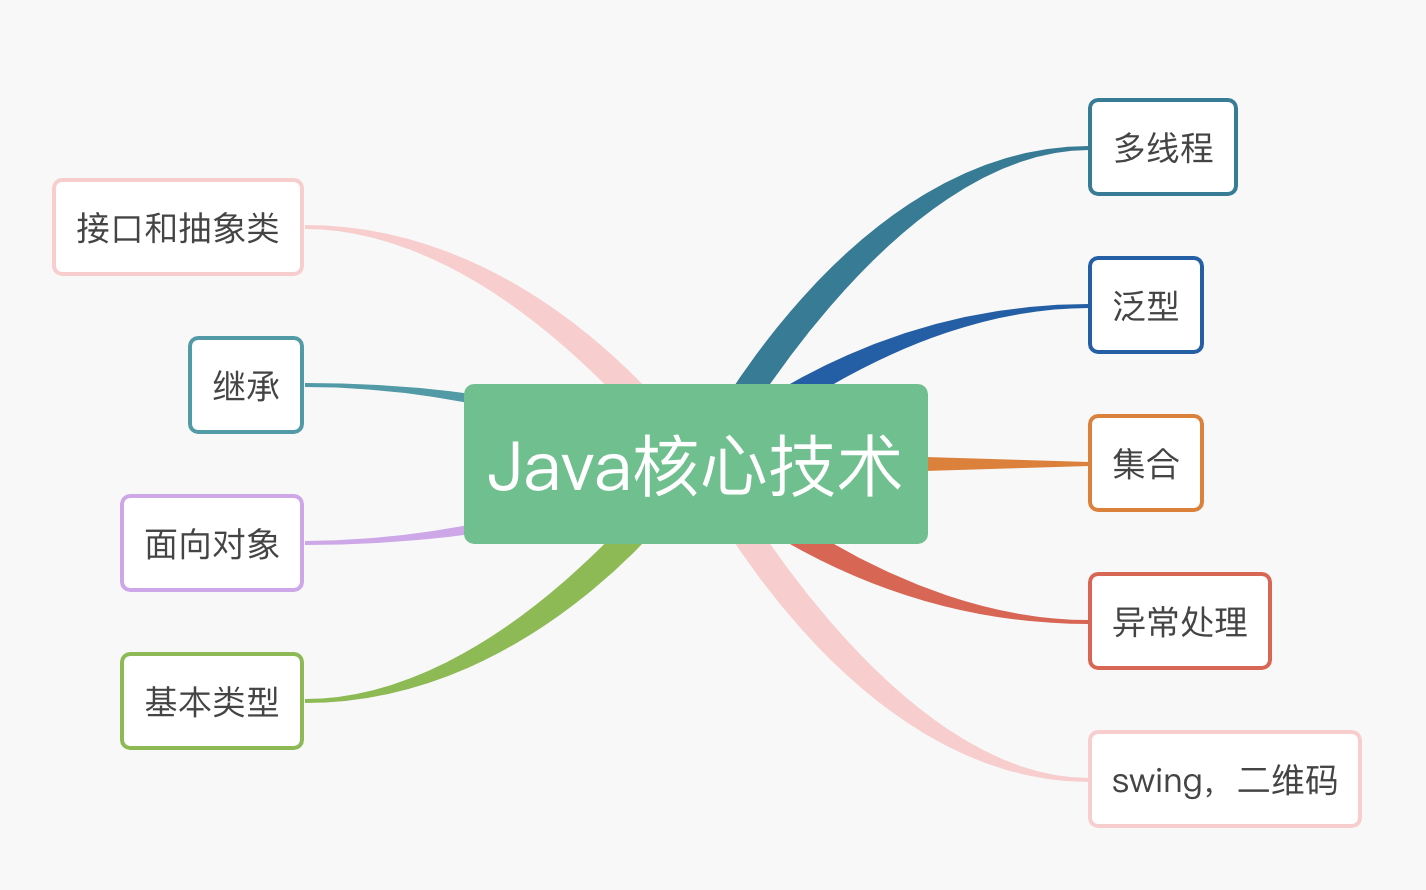 Java 核心技术博文思维导图